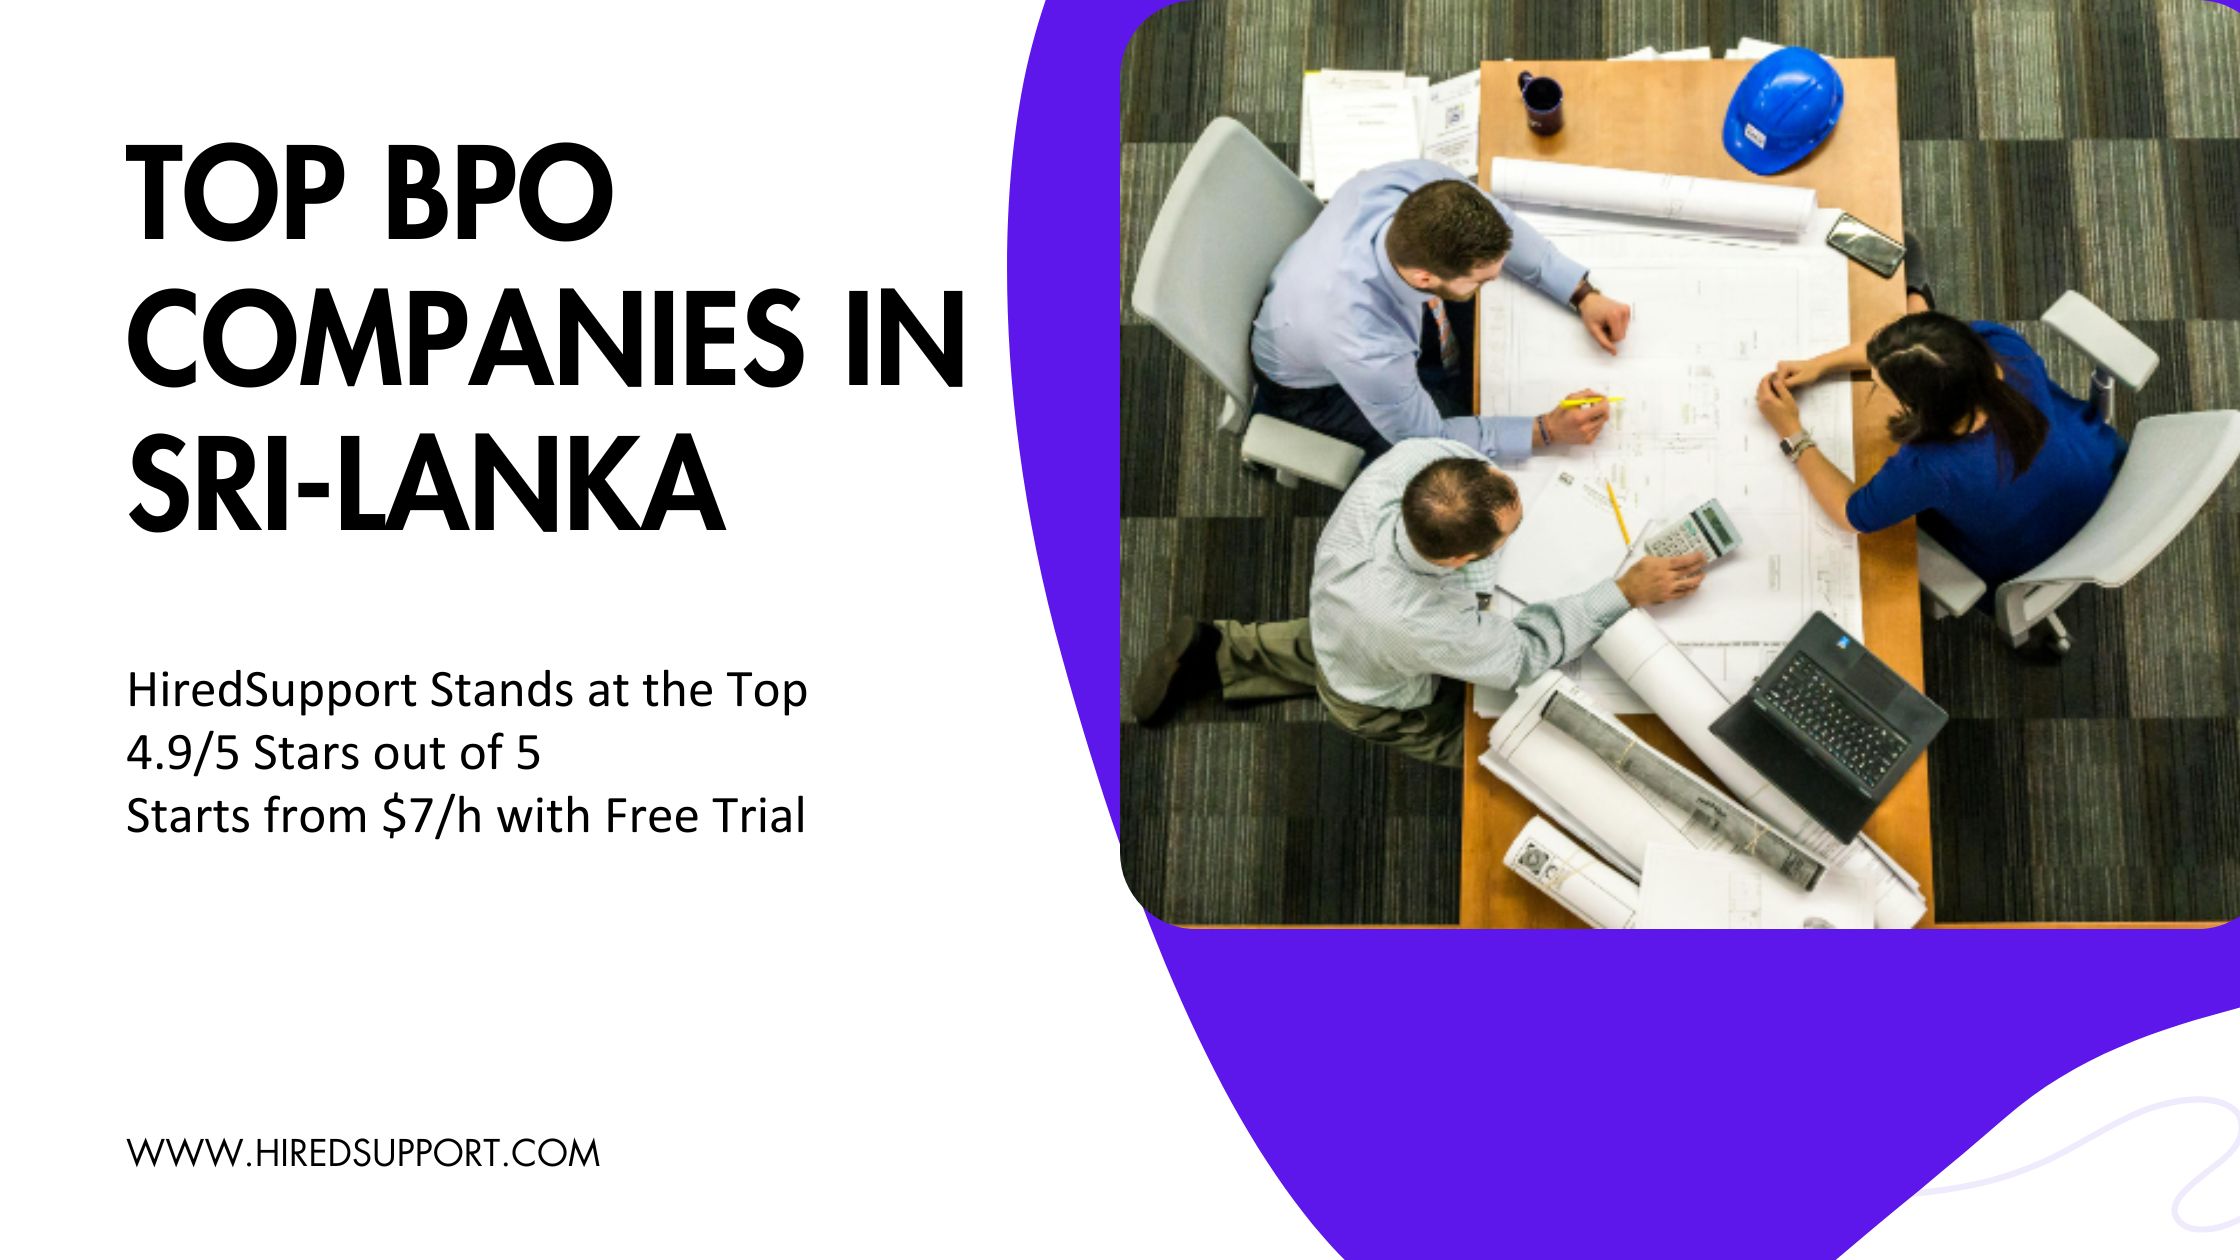 Top BPO companies in Sri-Lanka